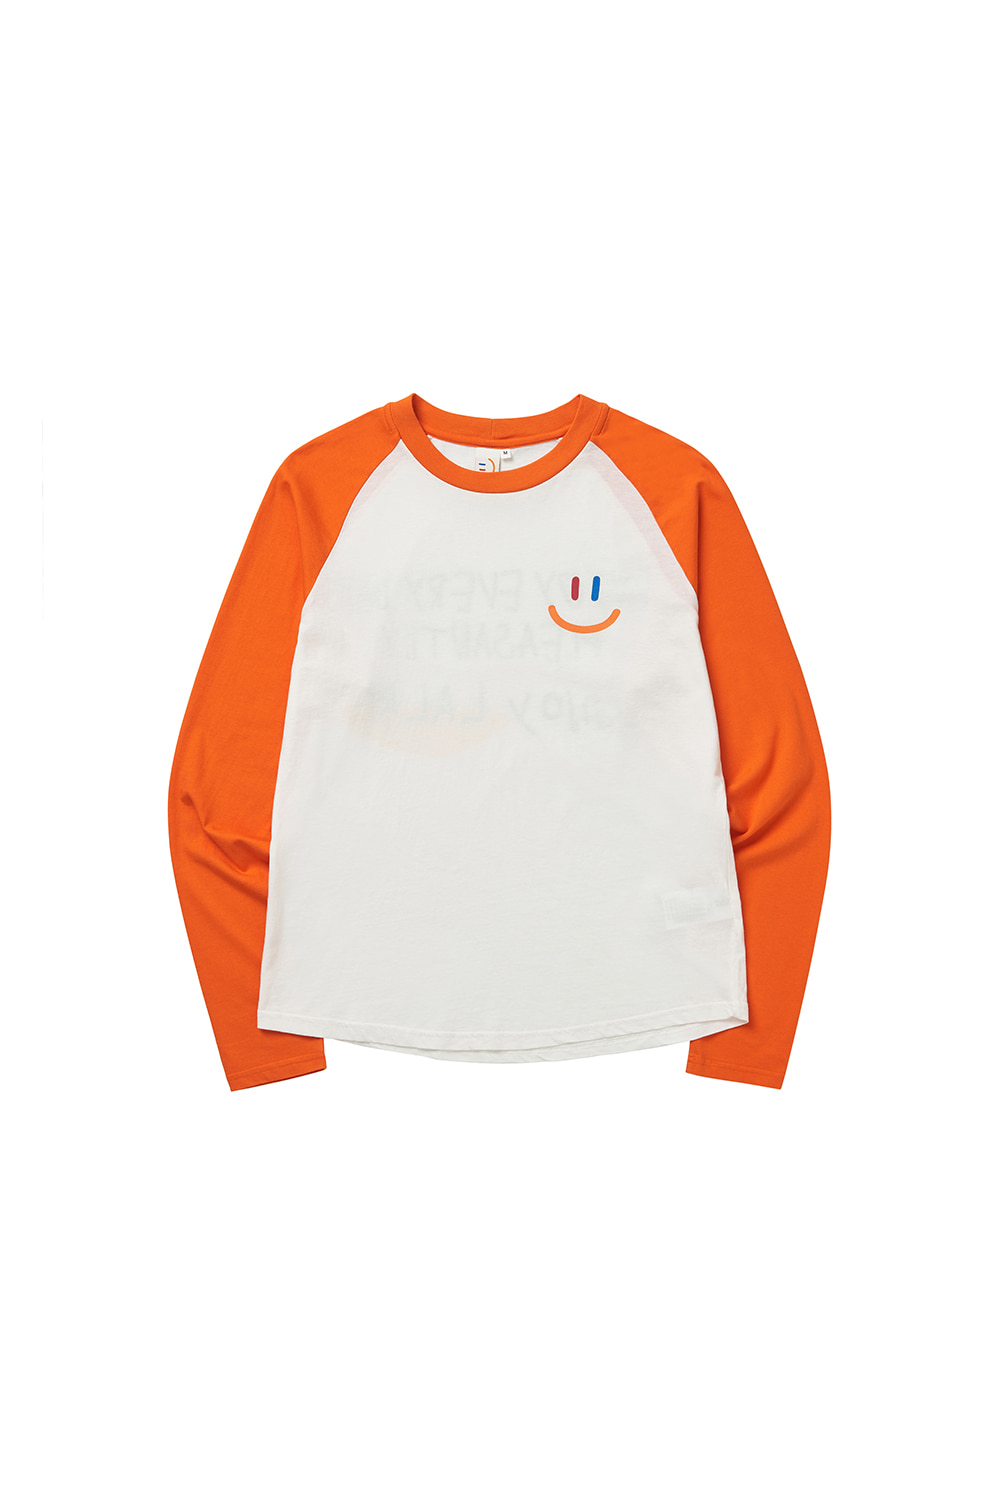 LaLa Raglan T-Shirt [Orange]